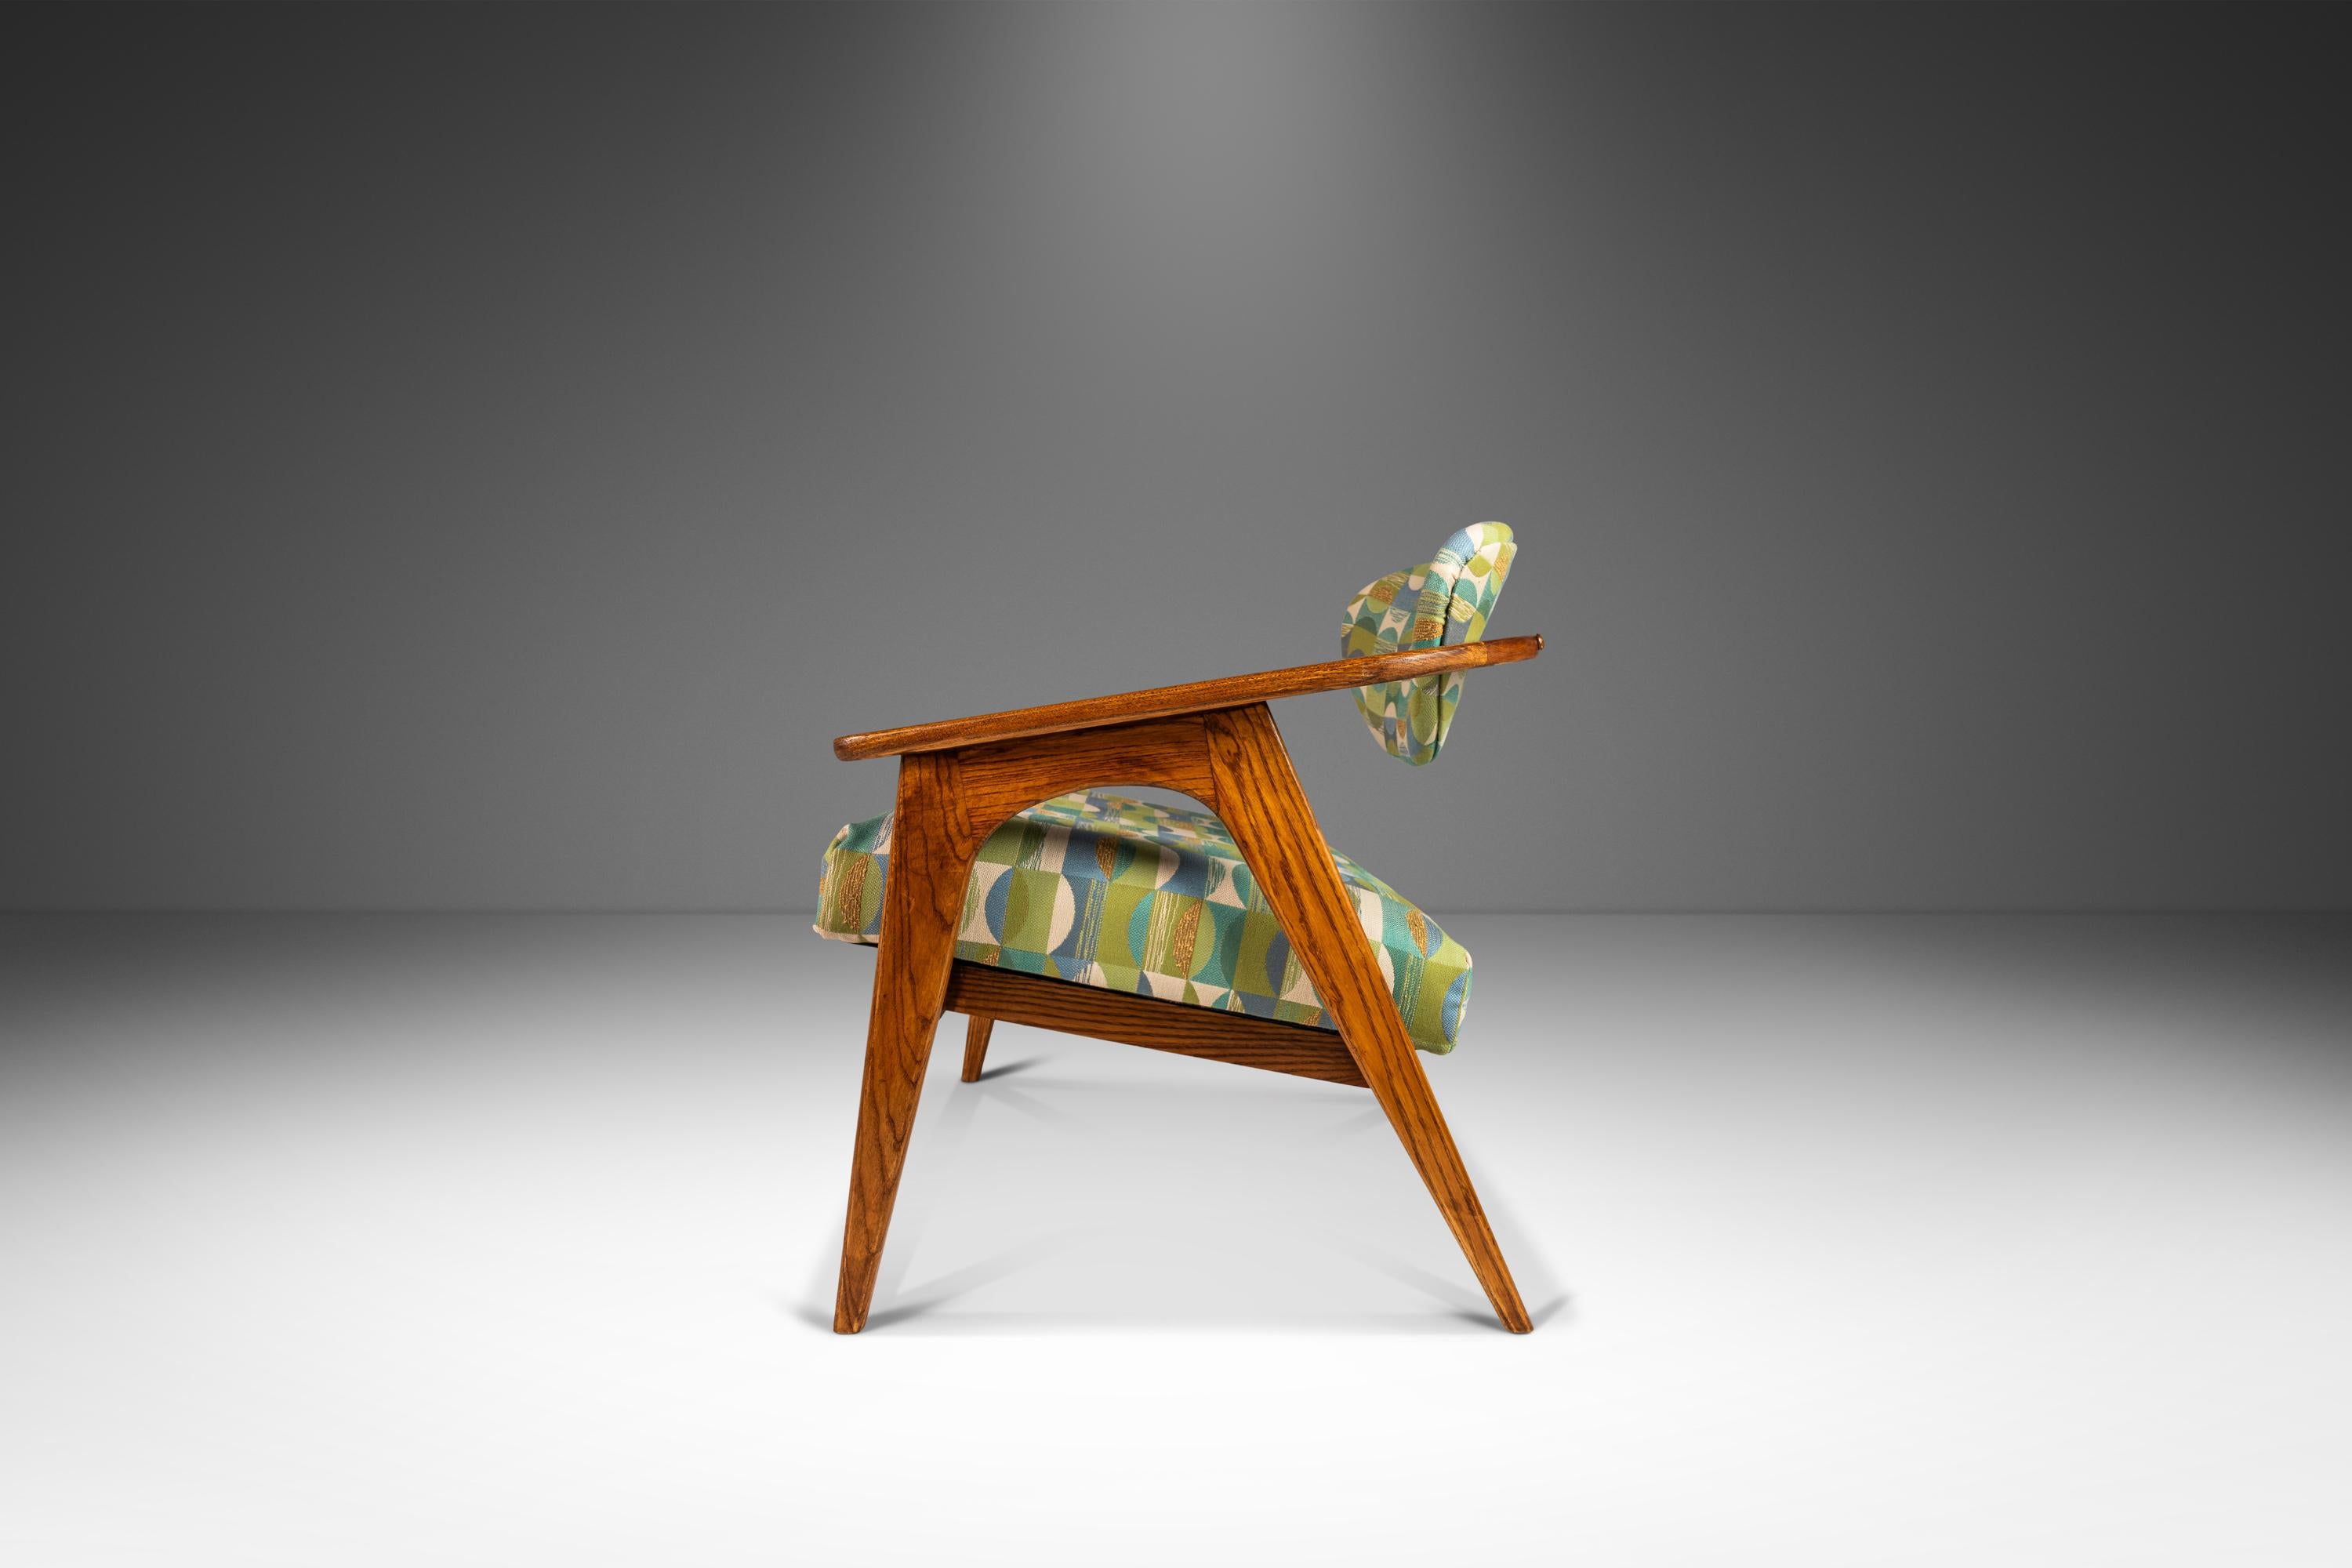 Das vom unvergleichlichen Adrian Pearsall entworfene ikonische Modell 916-CC Captain's Chair ist der Inbegriff funktionaler Kunst. Optisch atemberaubend und kühn in Form und verwendeten Materialien ist der 916-CC ein wahres Meisterwerk der